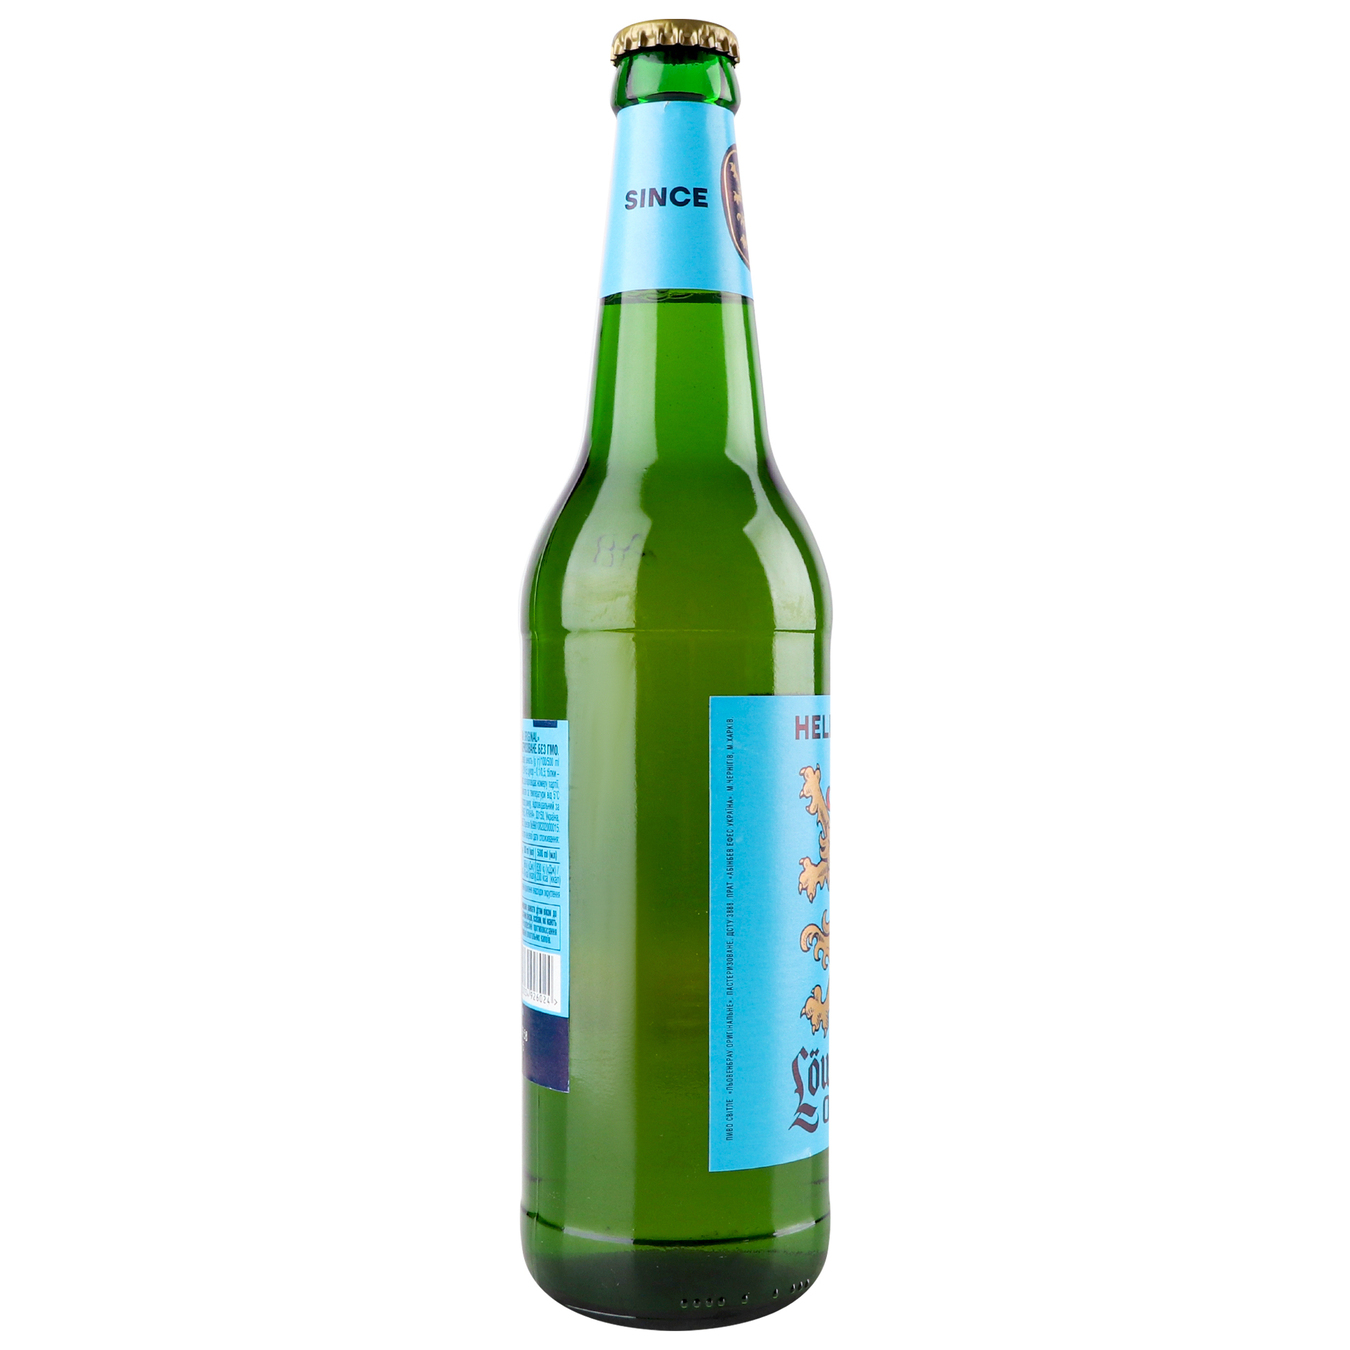 Пиво Lowenbrau Original светлое пастеризованное 5,1% 0,5л стеклянная бутылка 3